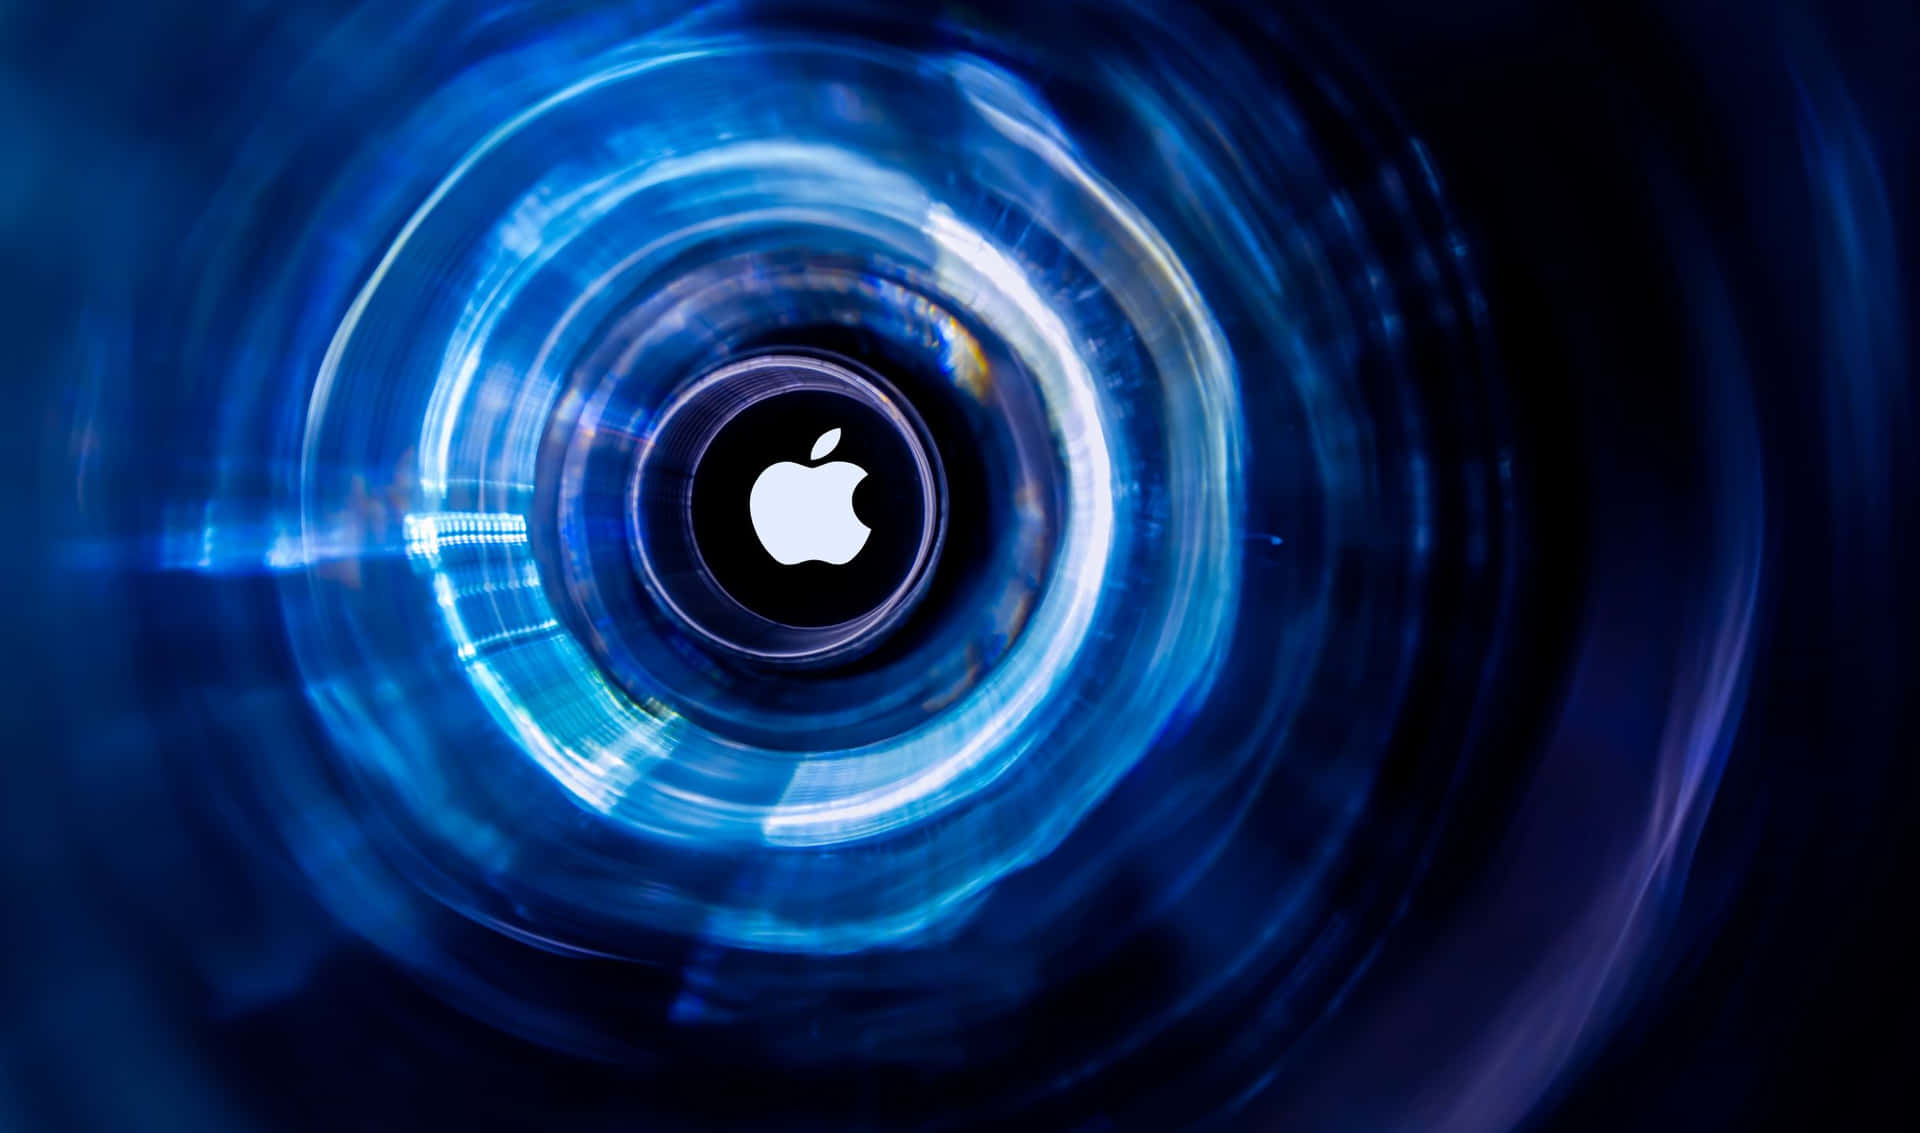 Logode Apple En El Fondo De Círculos Azules Con Resolución De 2440x1440.